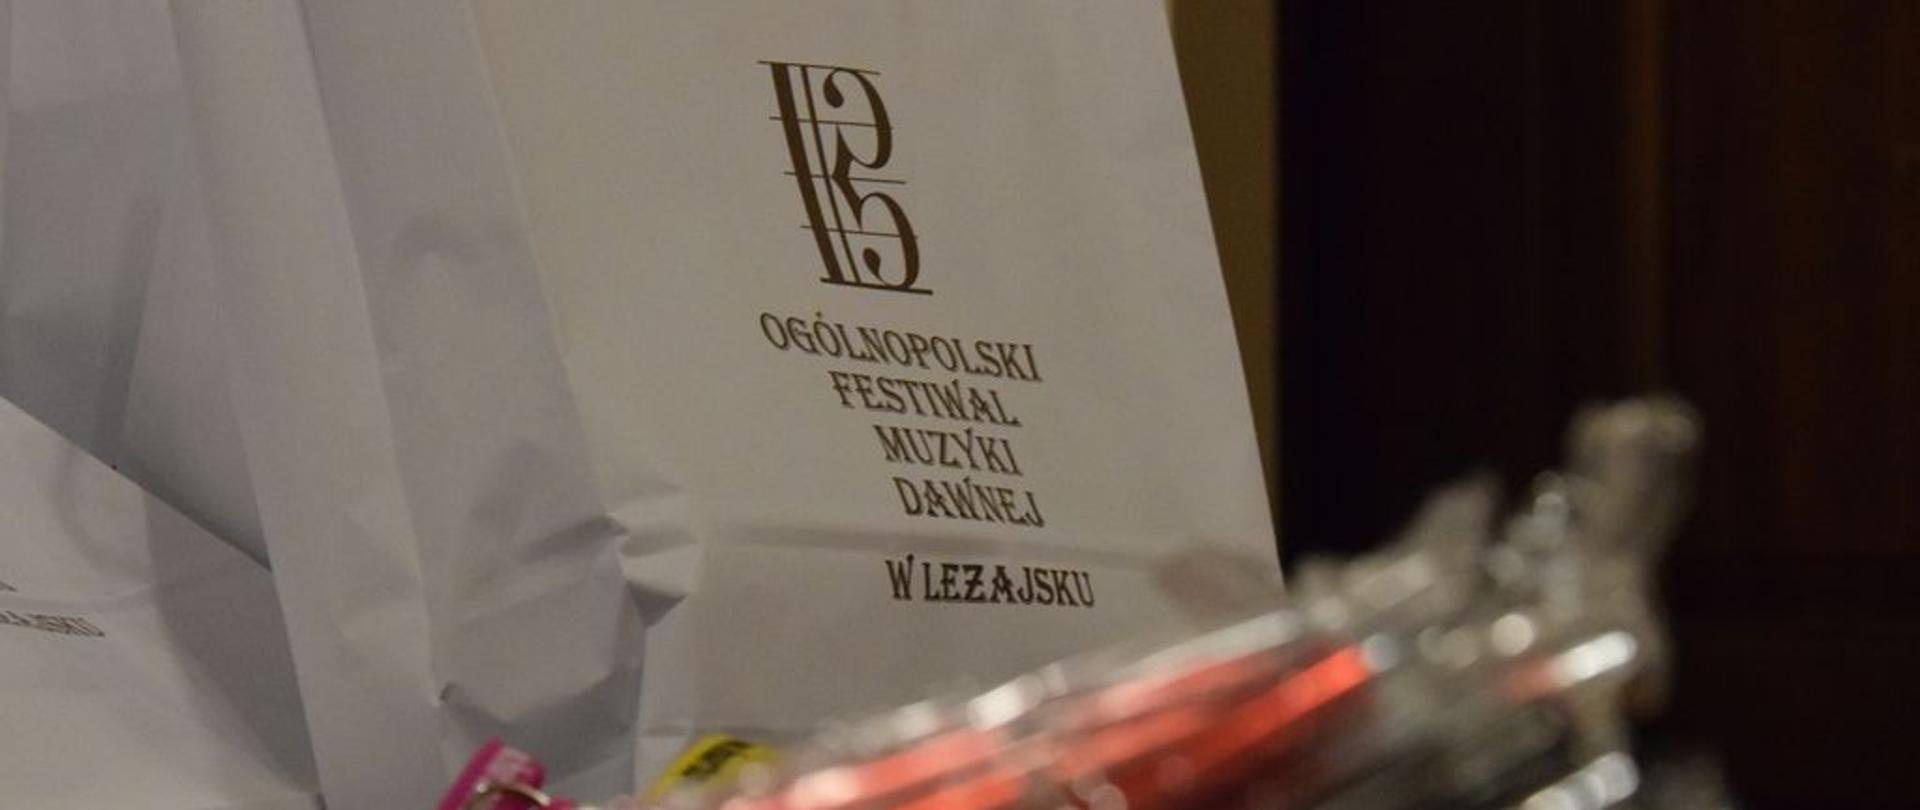 Nagrody dla uczestników Ogólnopolskiego Festiwalu Muzyki Dawnej. Zdjęcie utrzymane w lekkich jasnych barwach. Na zdjęciu na pierwszym planie rozmazany zarys długopisów w kolorze czerwonym, dale torby białę z nagrodami - na torbach brązowy napis z nazwą festiwalu.